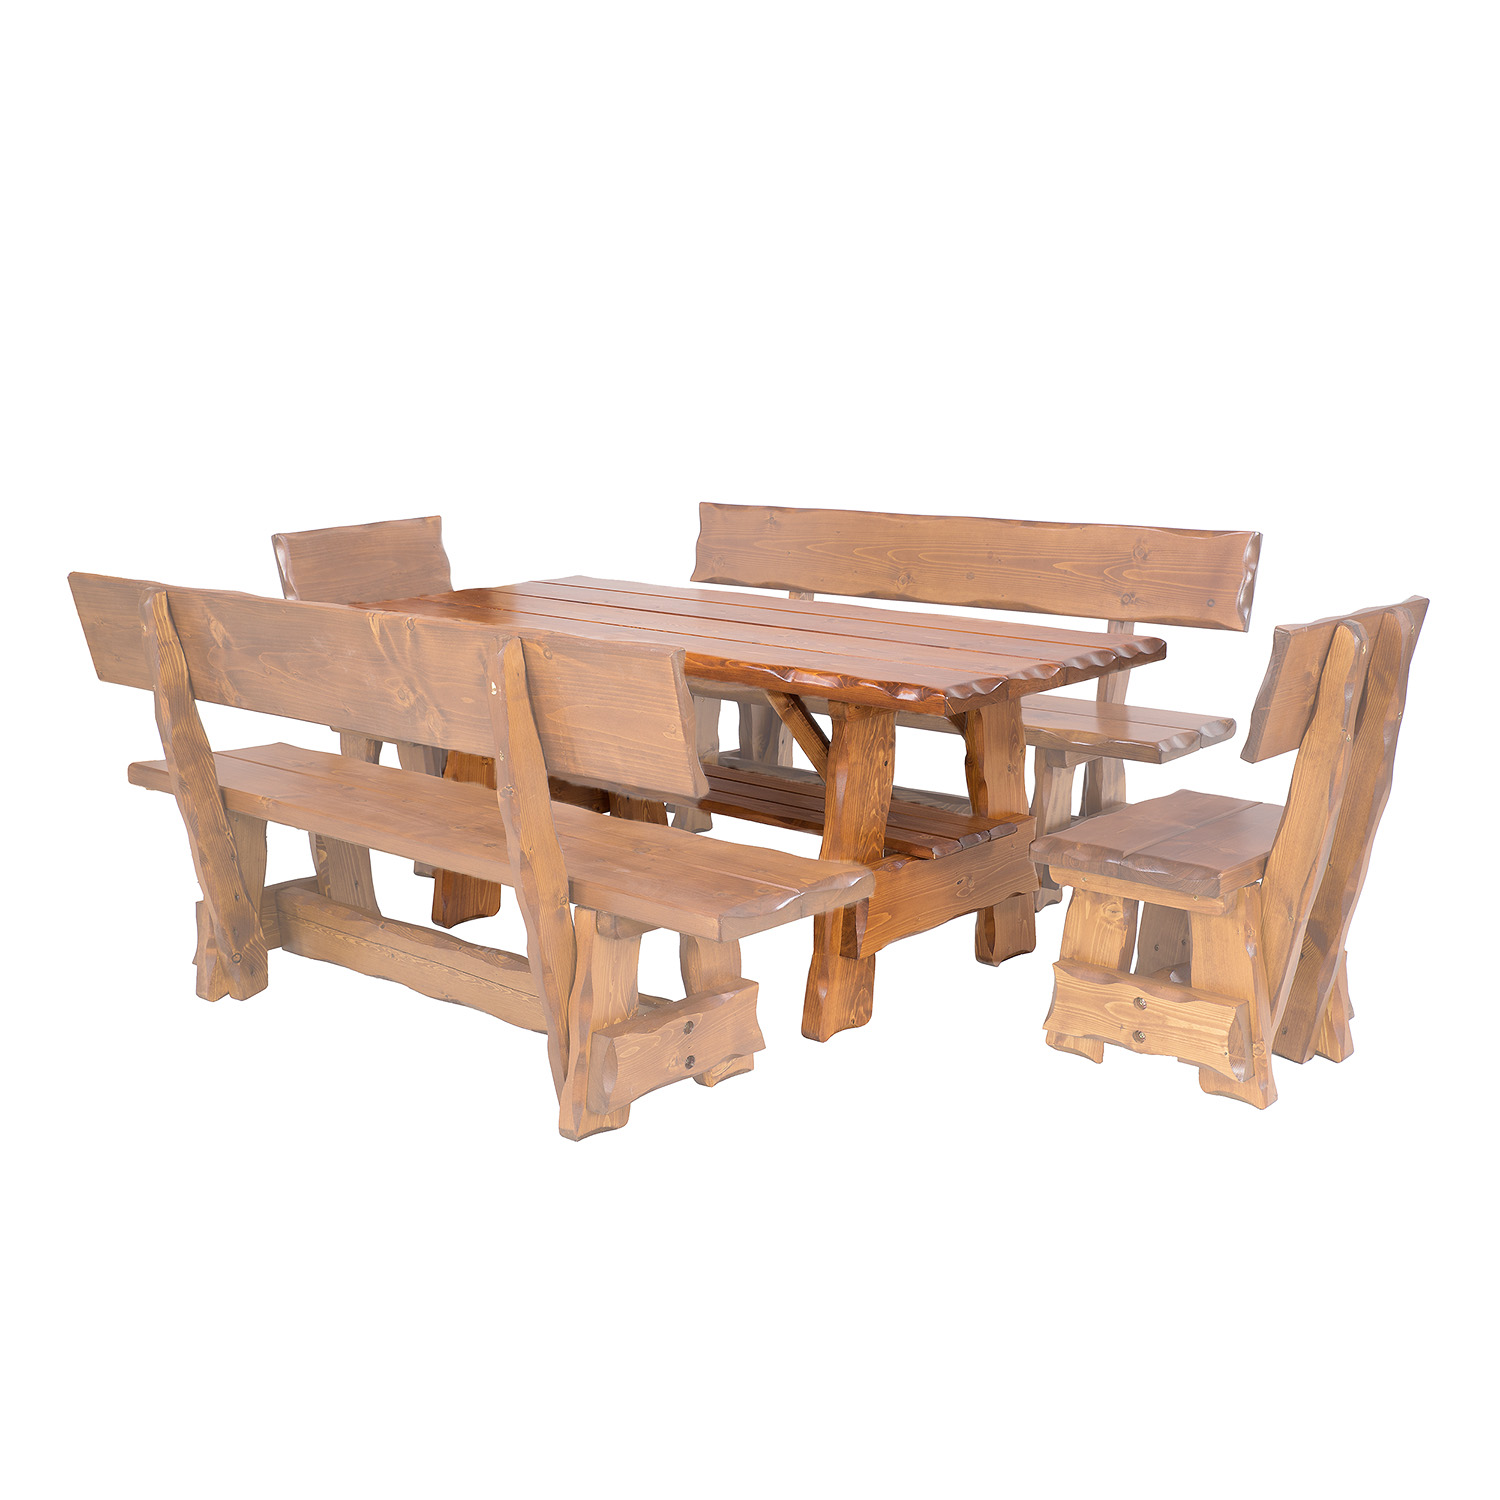 BEN - zahradní stůl ze smrkového dřeva, lakovaný 200x80x83cm - Dub lak